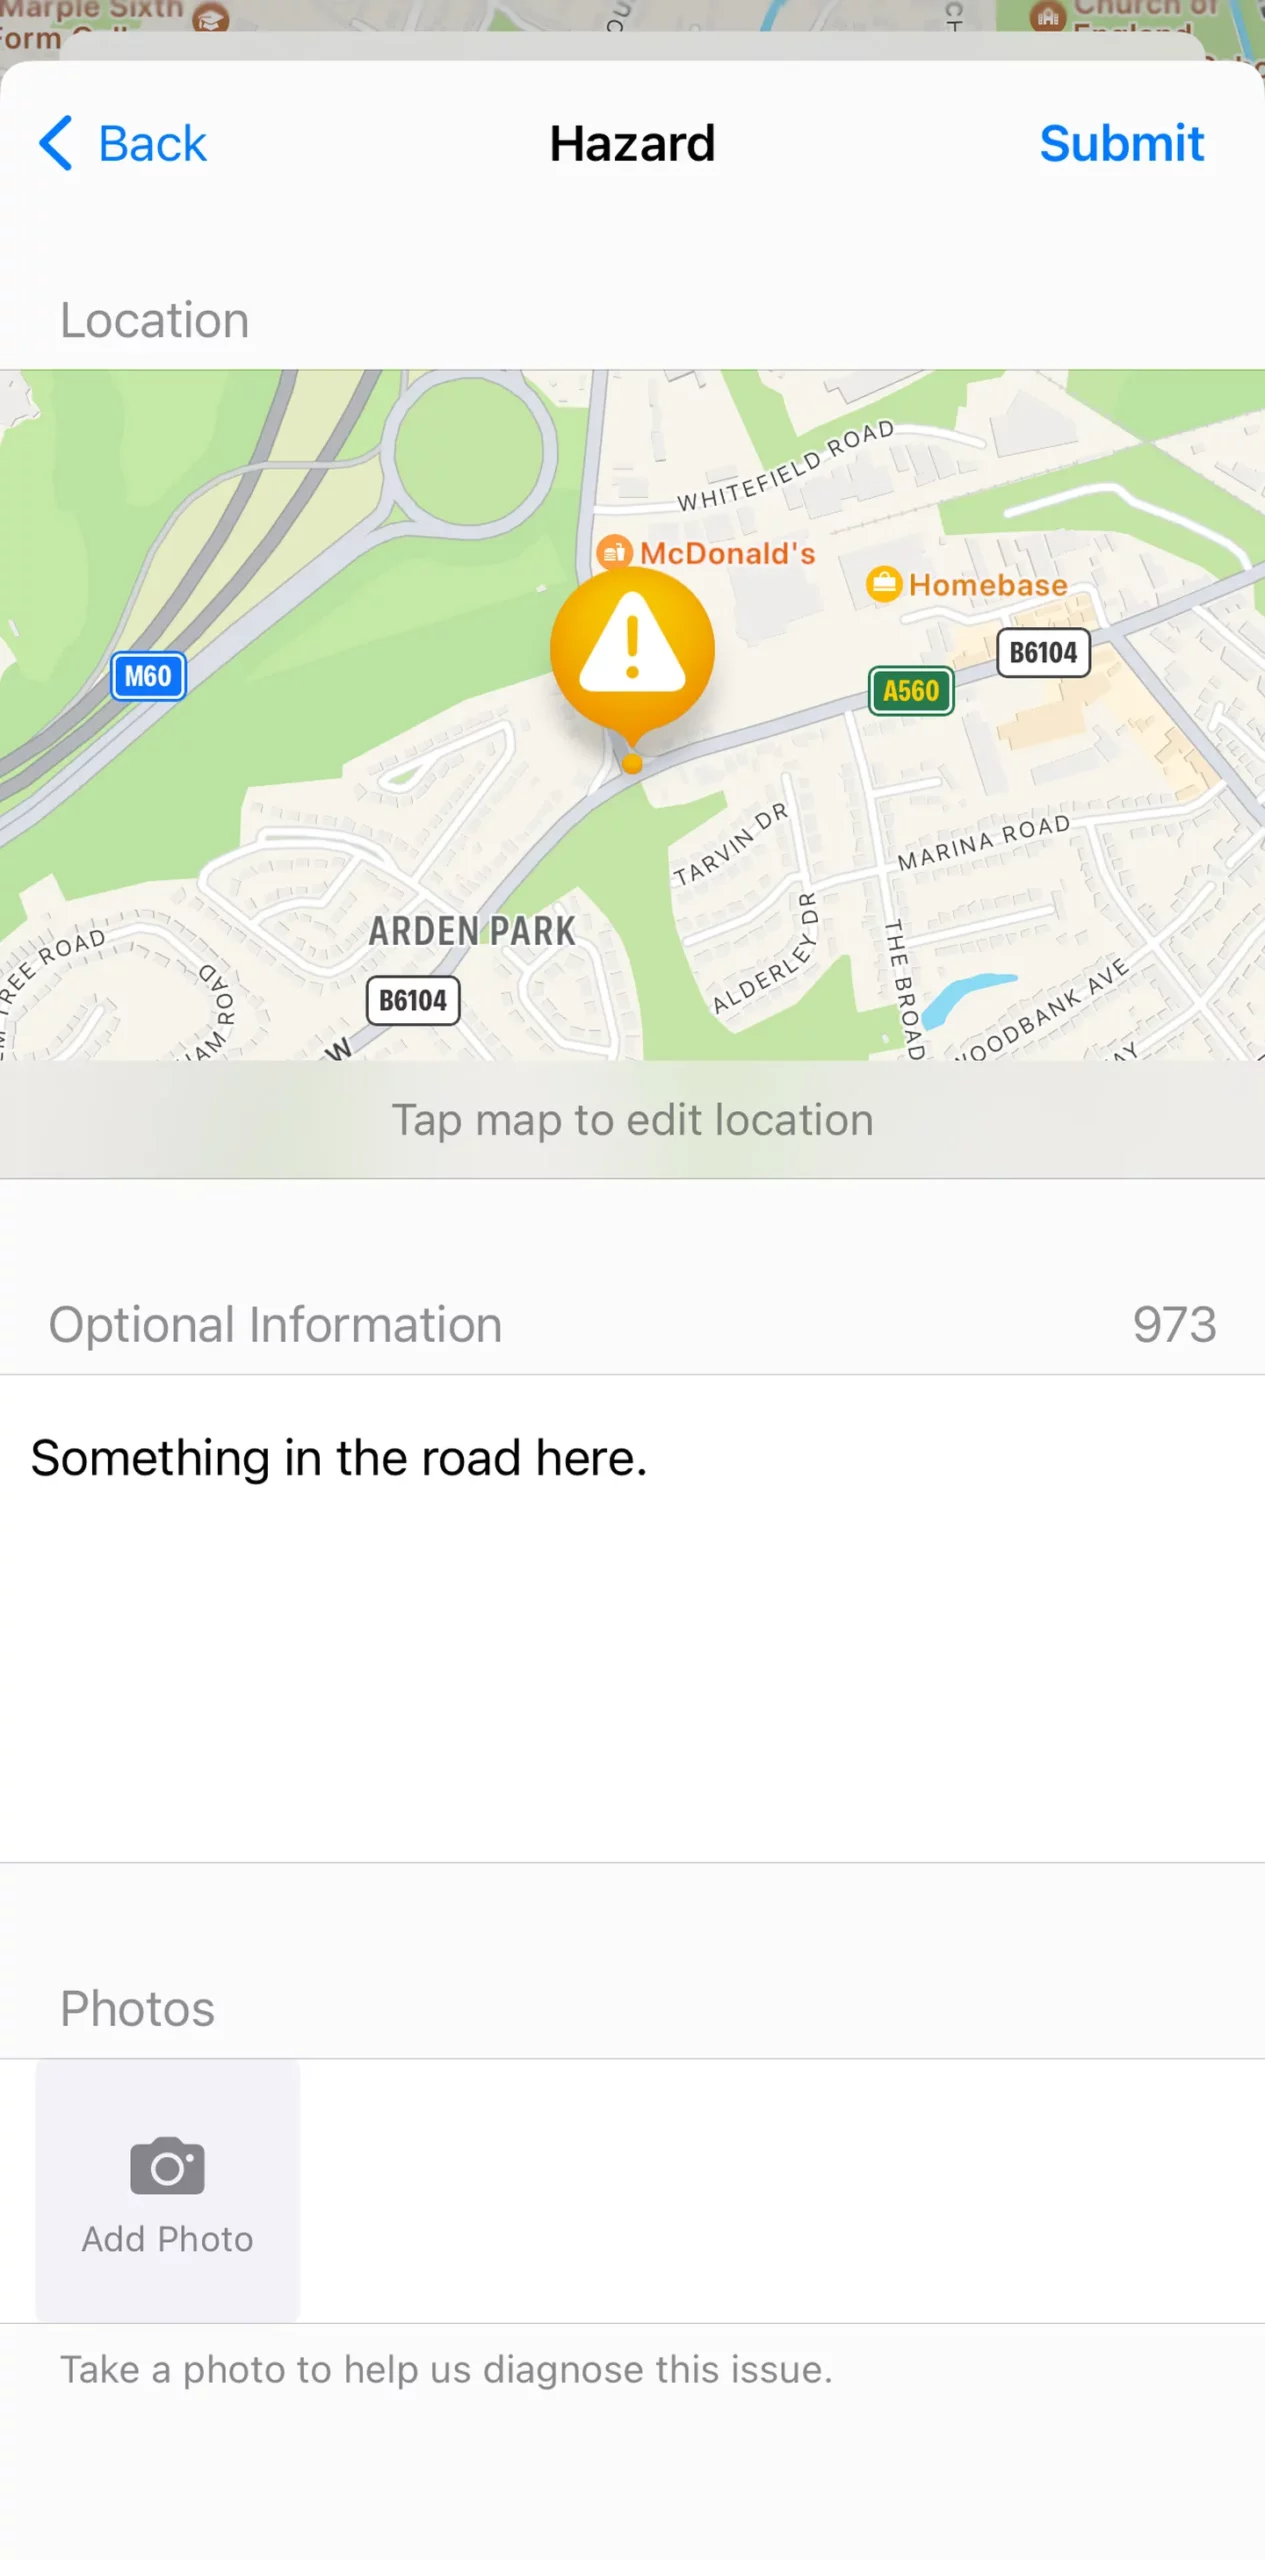 Reportar problemas en la carretera desde Google Maps y Apple Maps